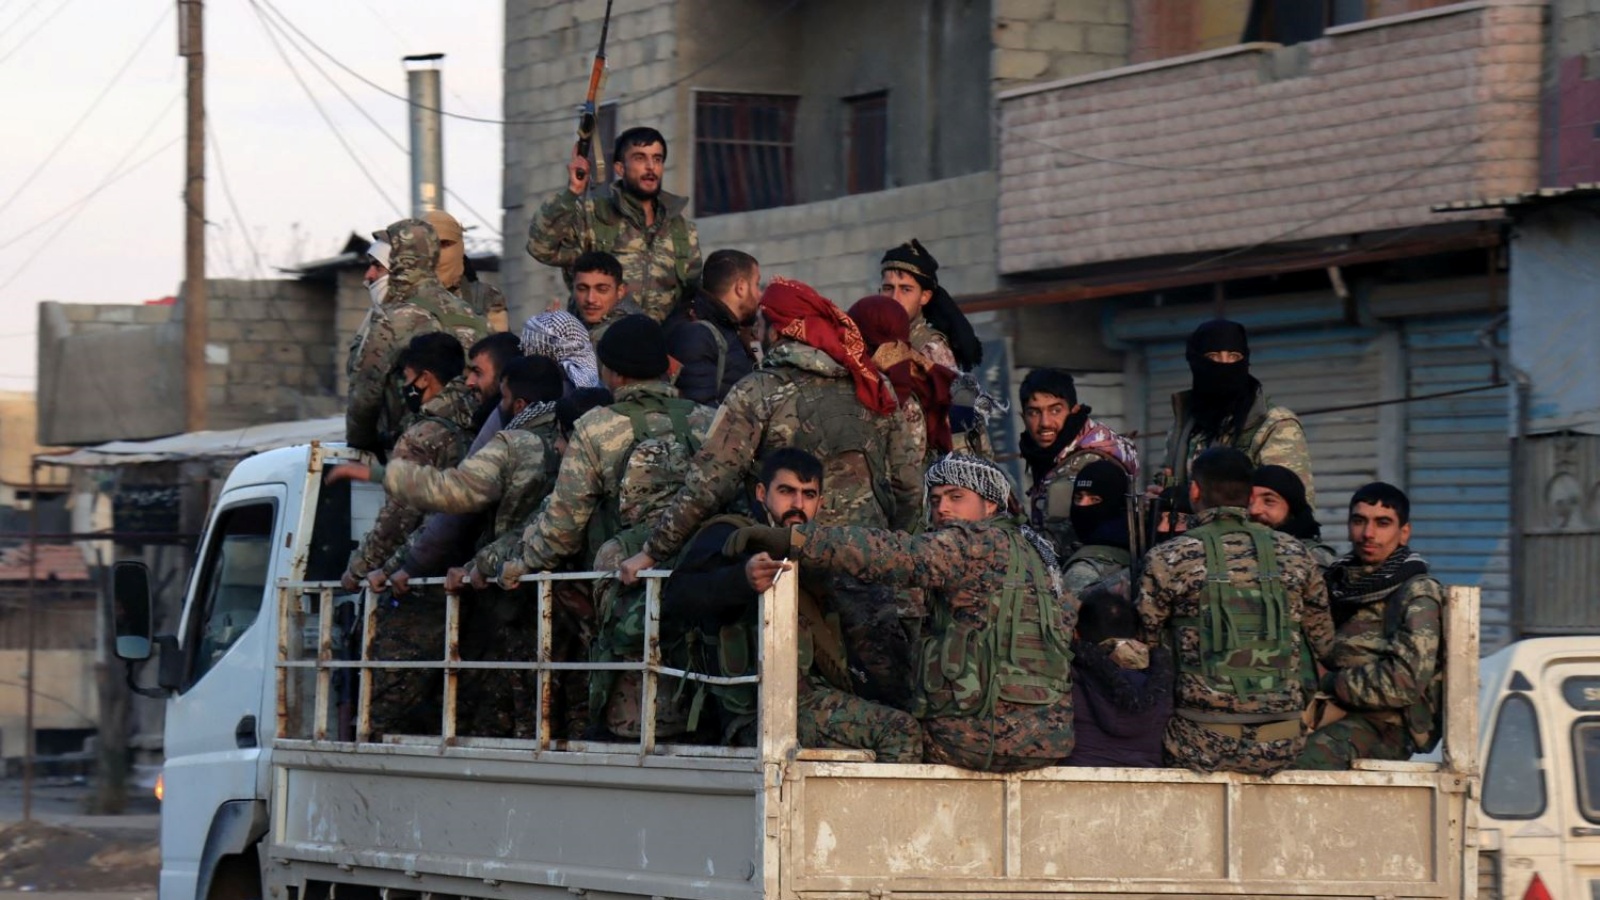 عناصر من قوات سوريا الديموقراطية يغادرون بعد انتهاء عمليات التمشيط في محيط سجن غويران الذي هاجمه تنظيم الدولة الإسلامية في الحسكة